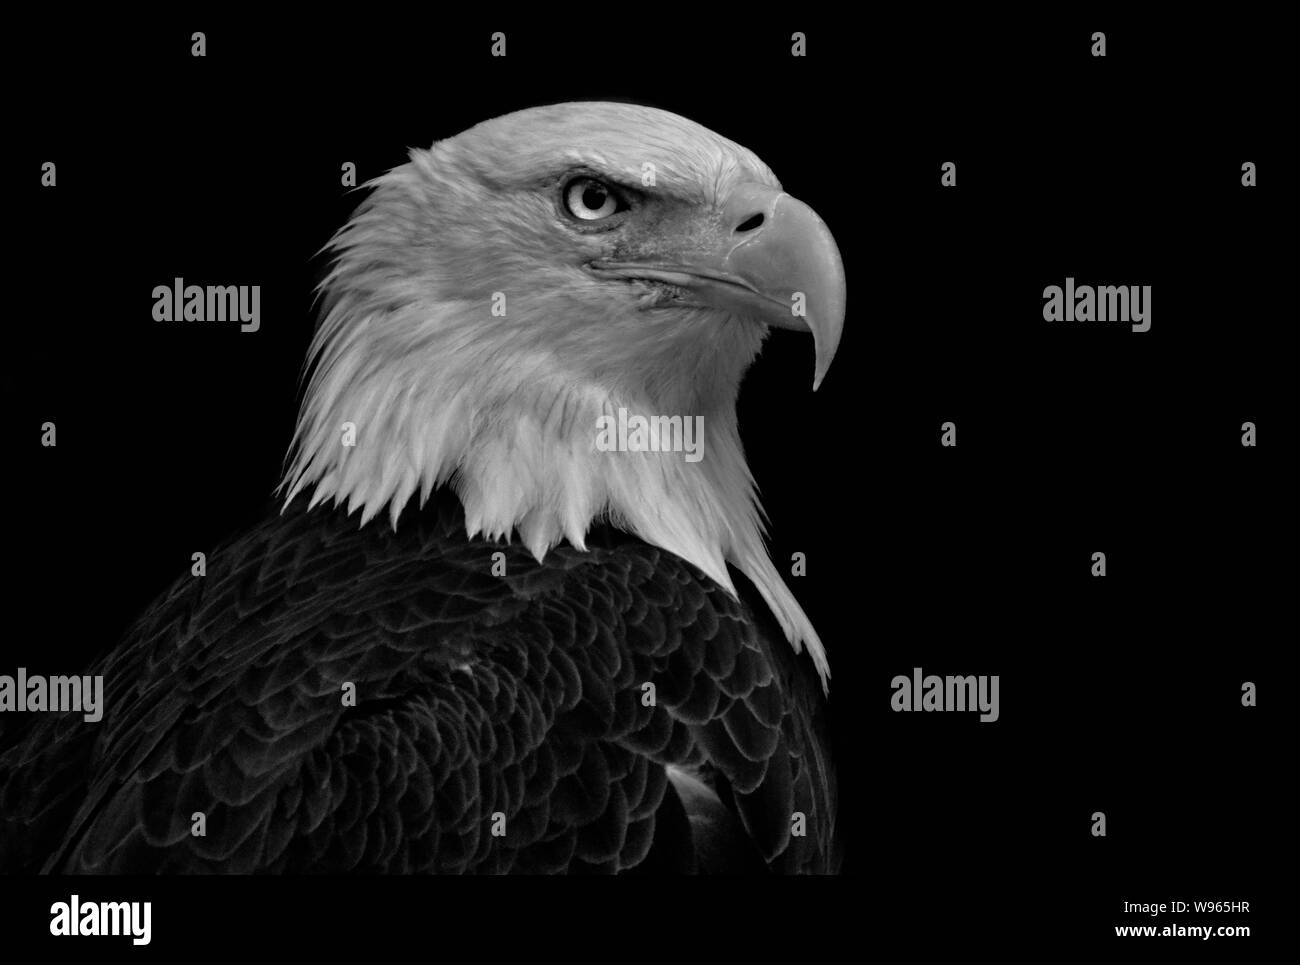 Profile of Bald eagle (Haliaeetus leucocephalus) on black background Stock Photo